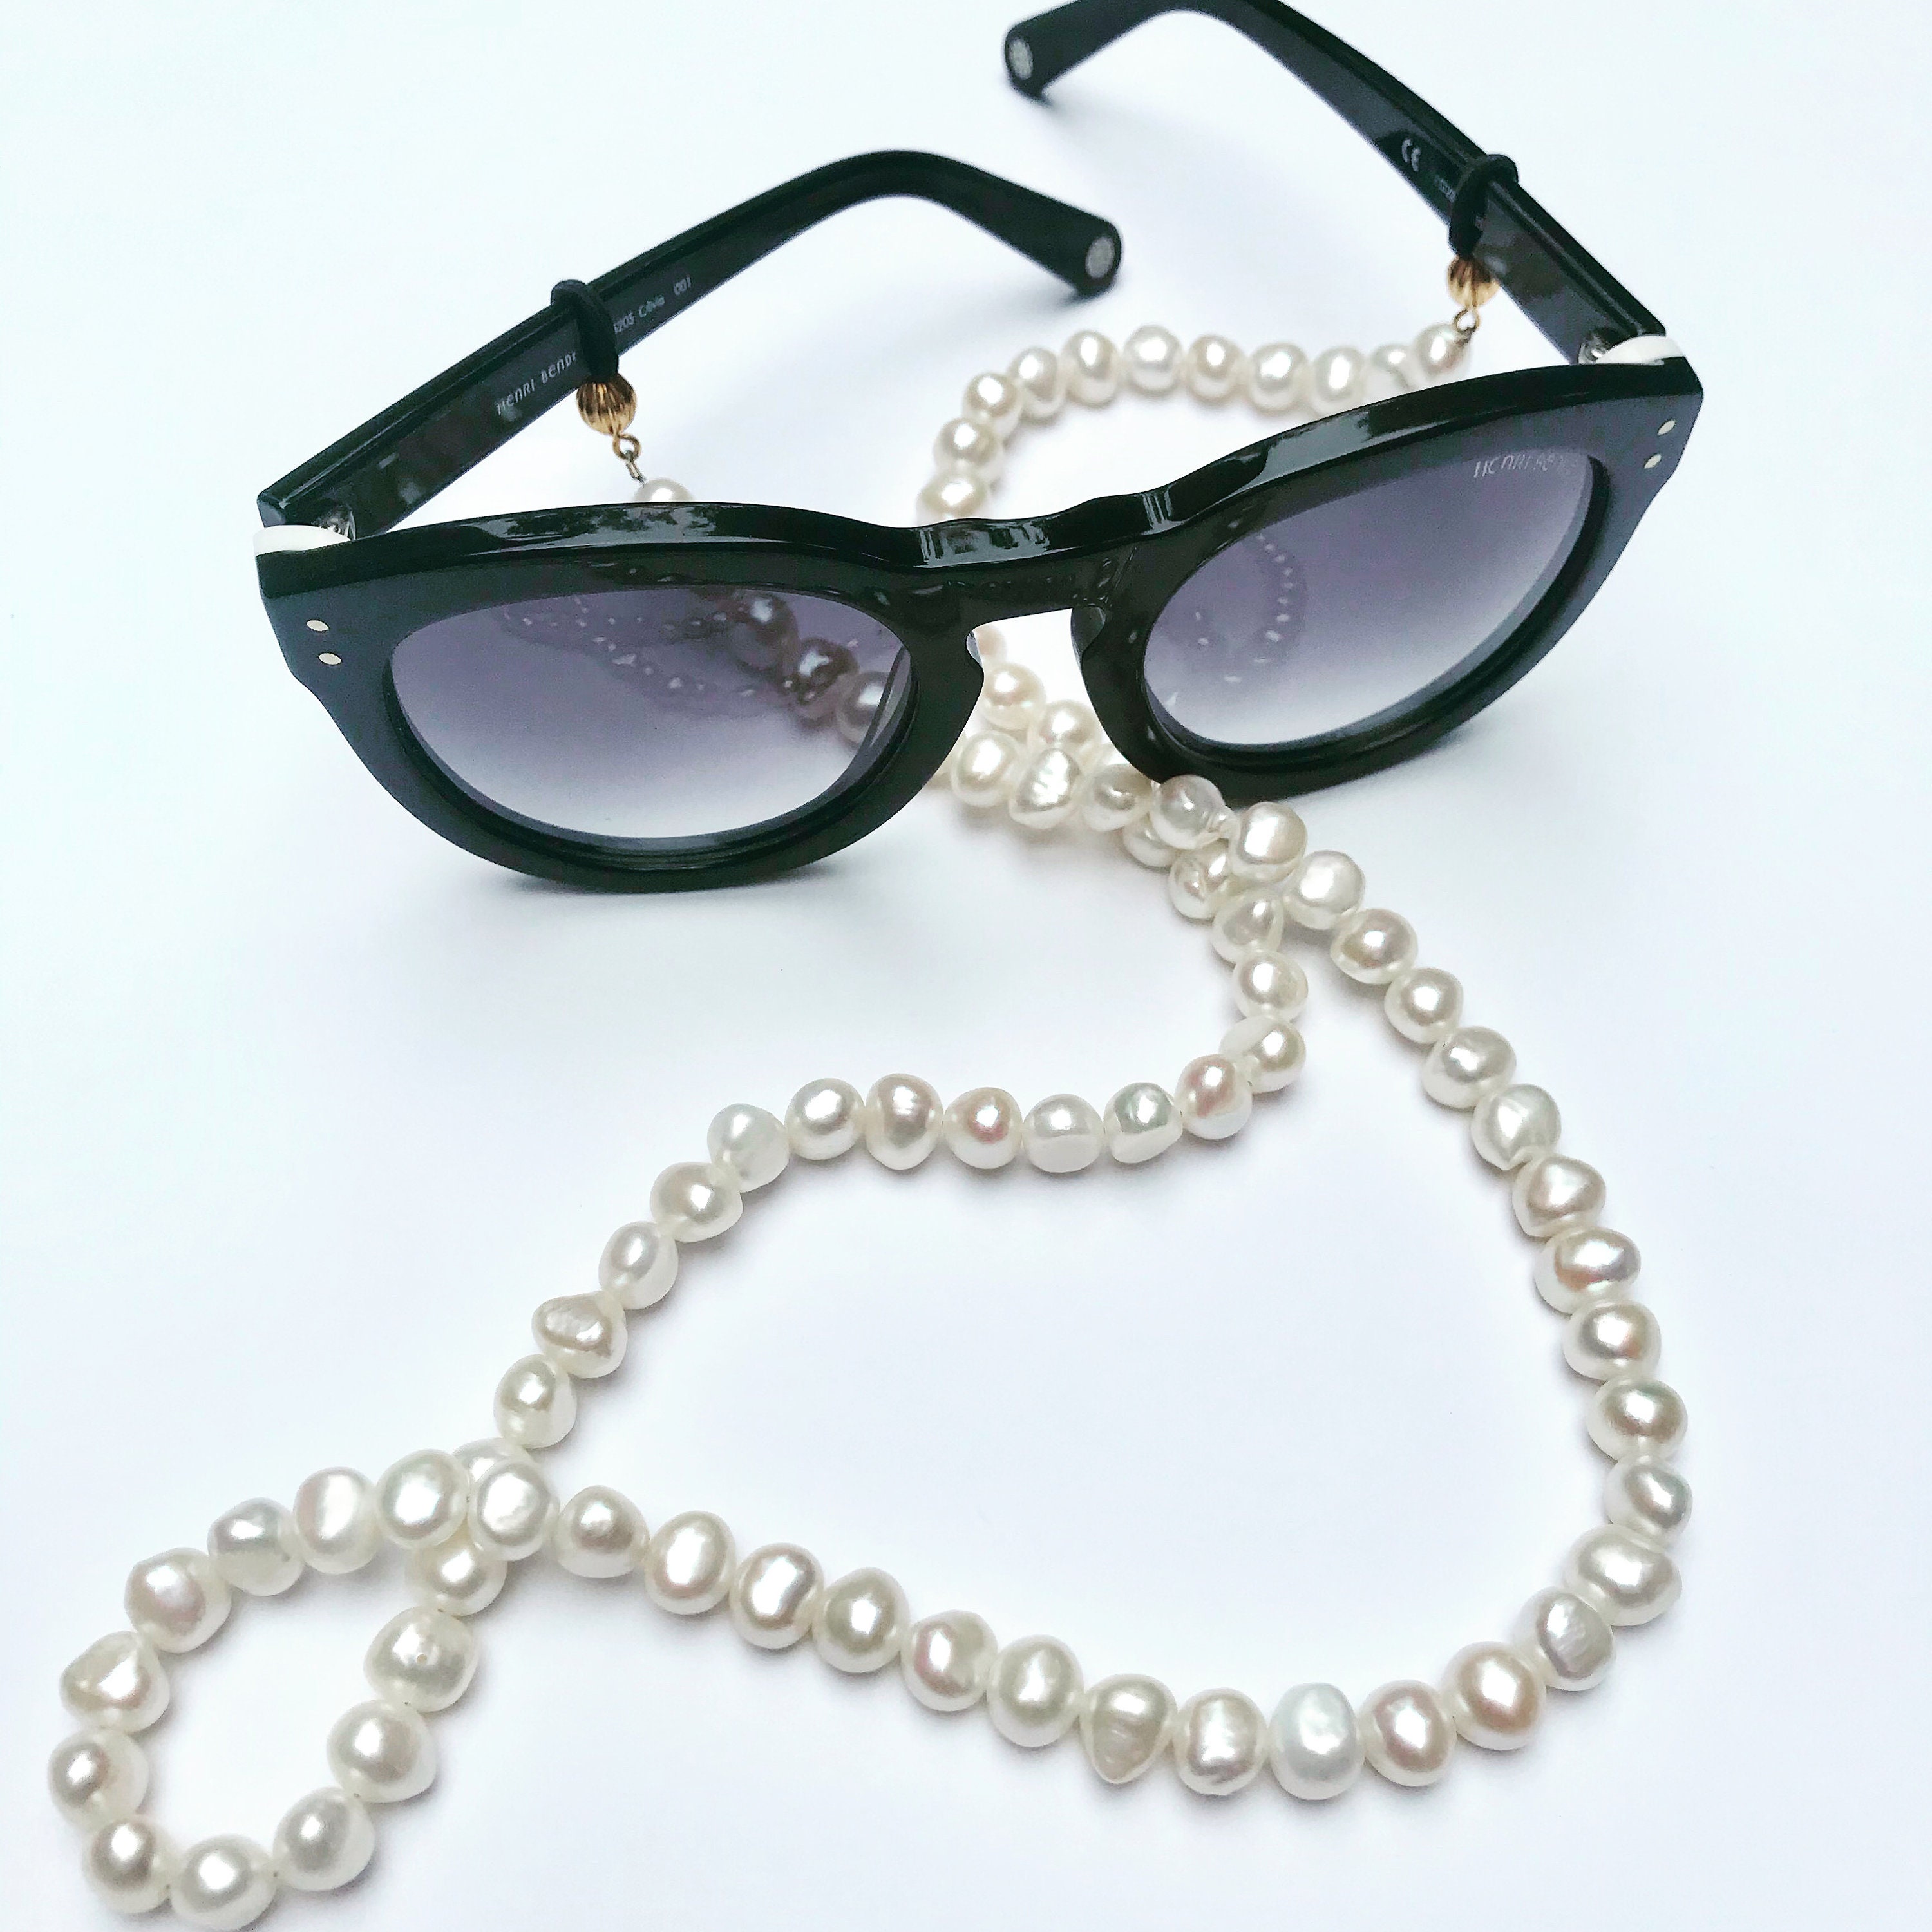 Glasses Chain, Gold Eyeglass Chain, Sunglasses Chain, Eyeglass Necklace,  Laces for Sunglasses, Glasses Holder. CHRISTI-LACES 